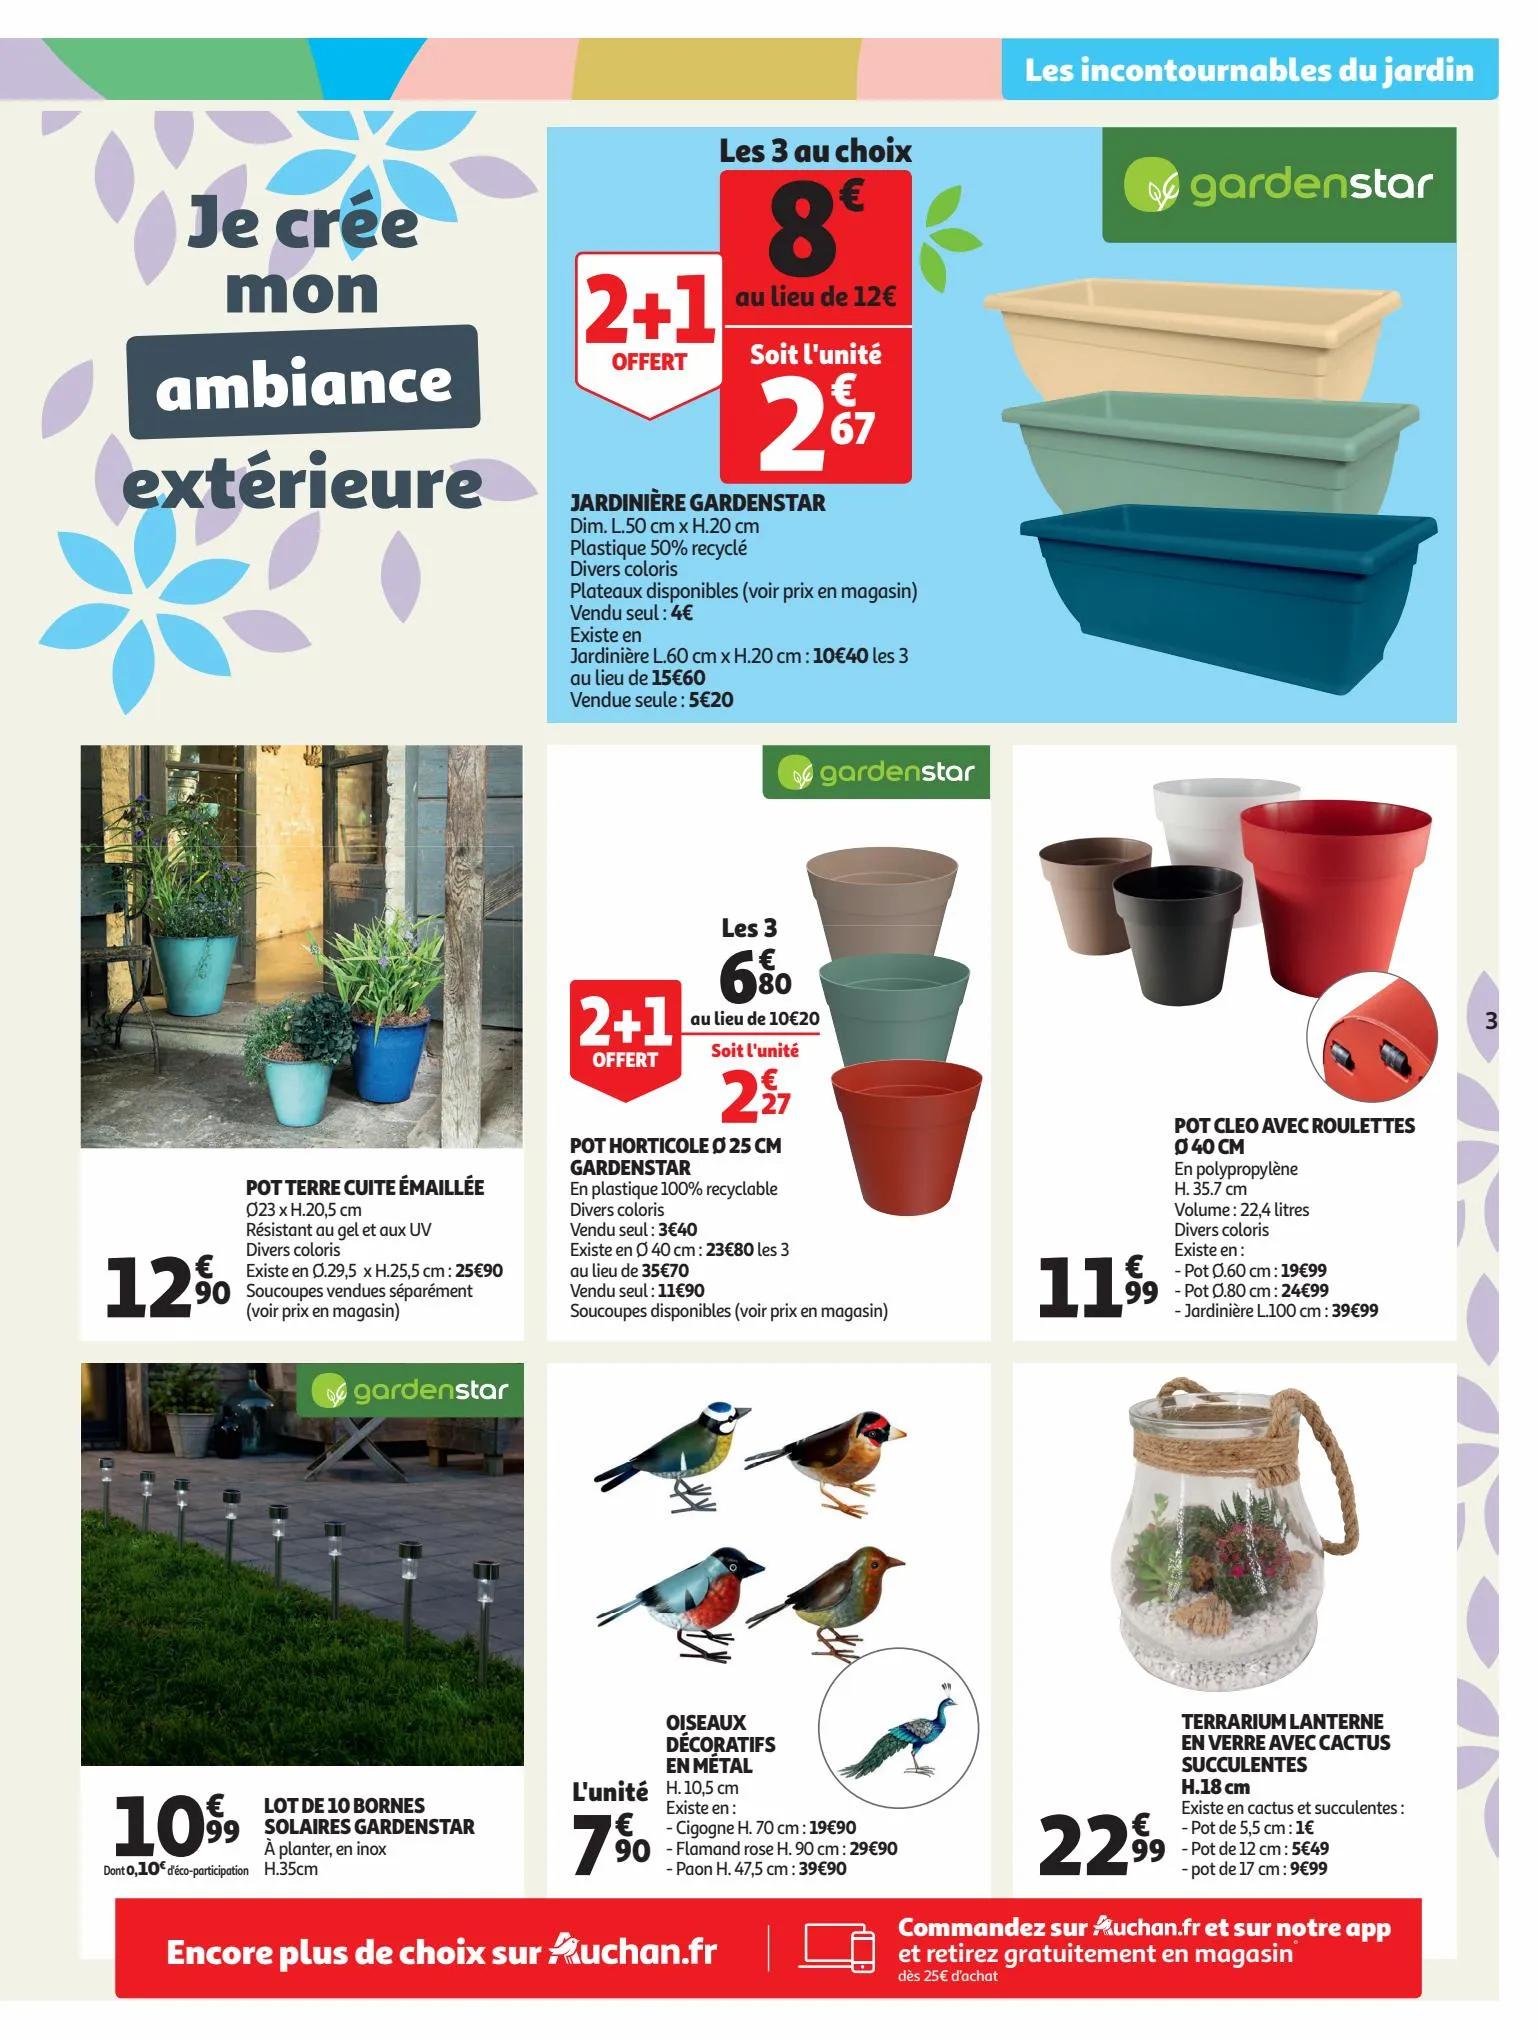 Catalogue C'est le moment de préparer votre jardin dans votre supermarché !, page 00003